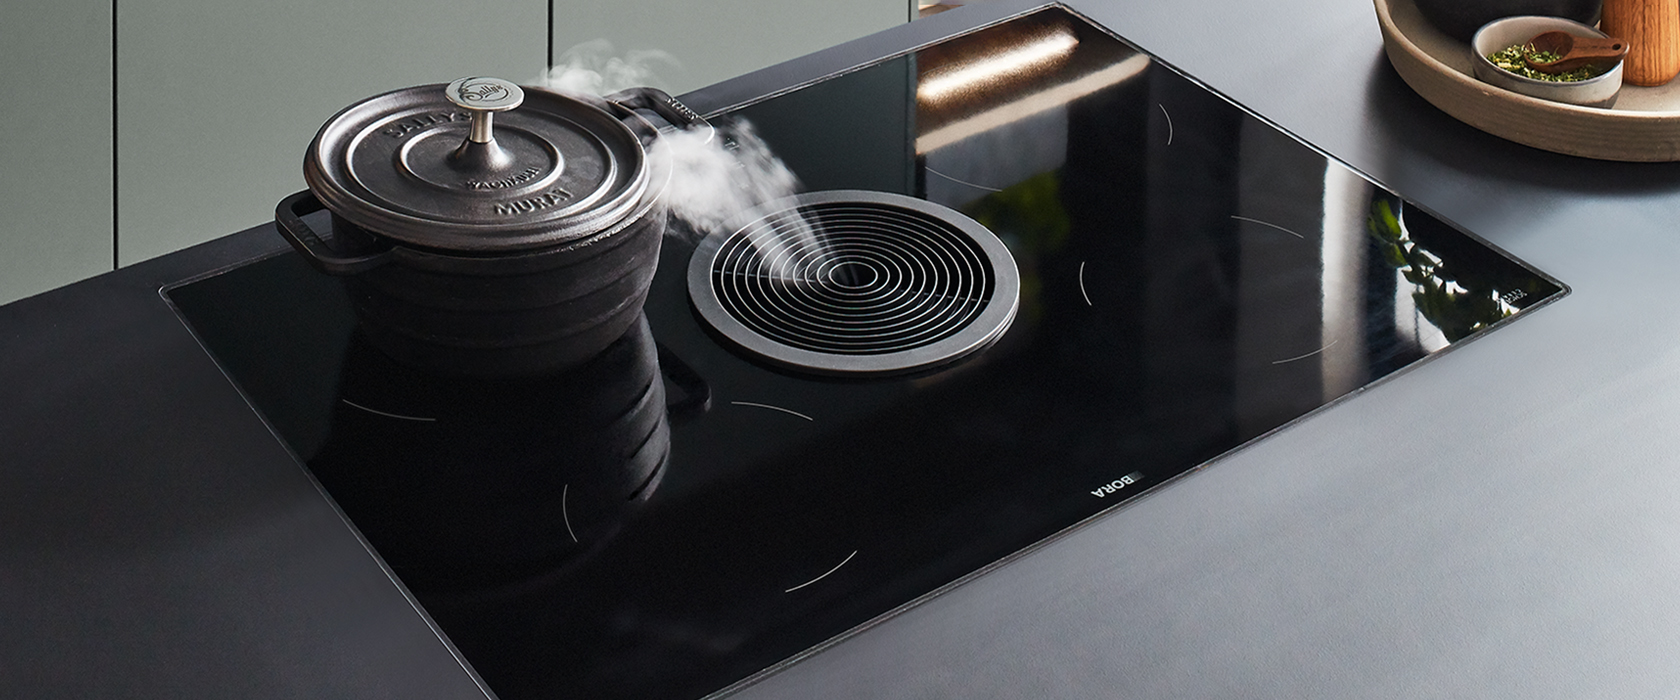 Plaque de cuisson à induction élégante et moderne avec une casserole en train de cuire, de la vapeur s'élevant, située dans une cuisine contemporaine aux tons terreux subtils.